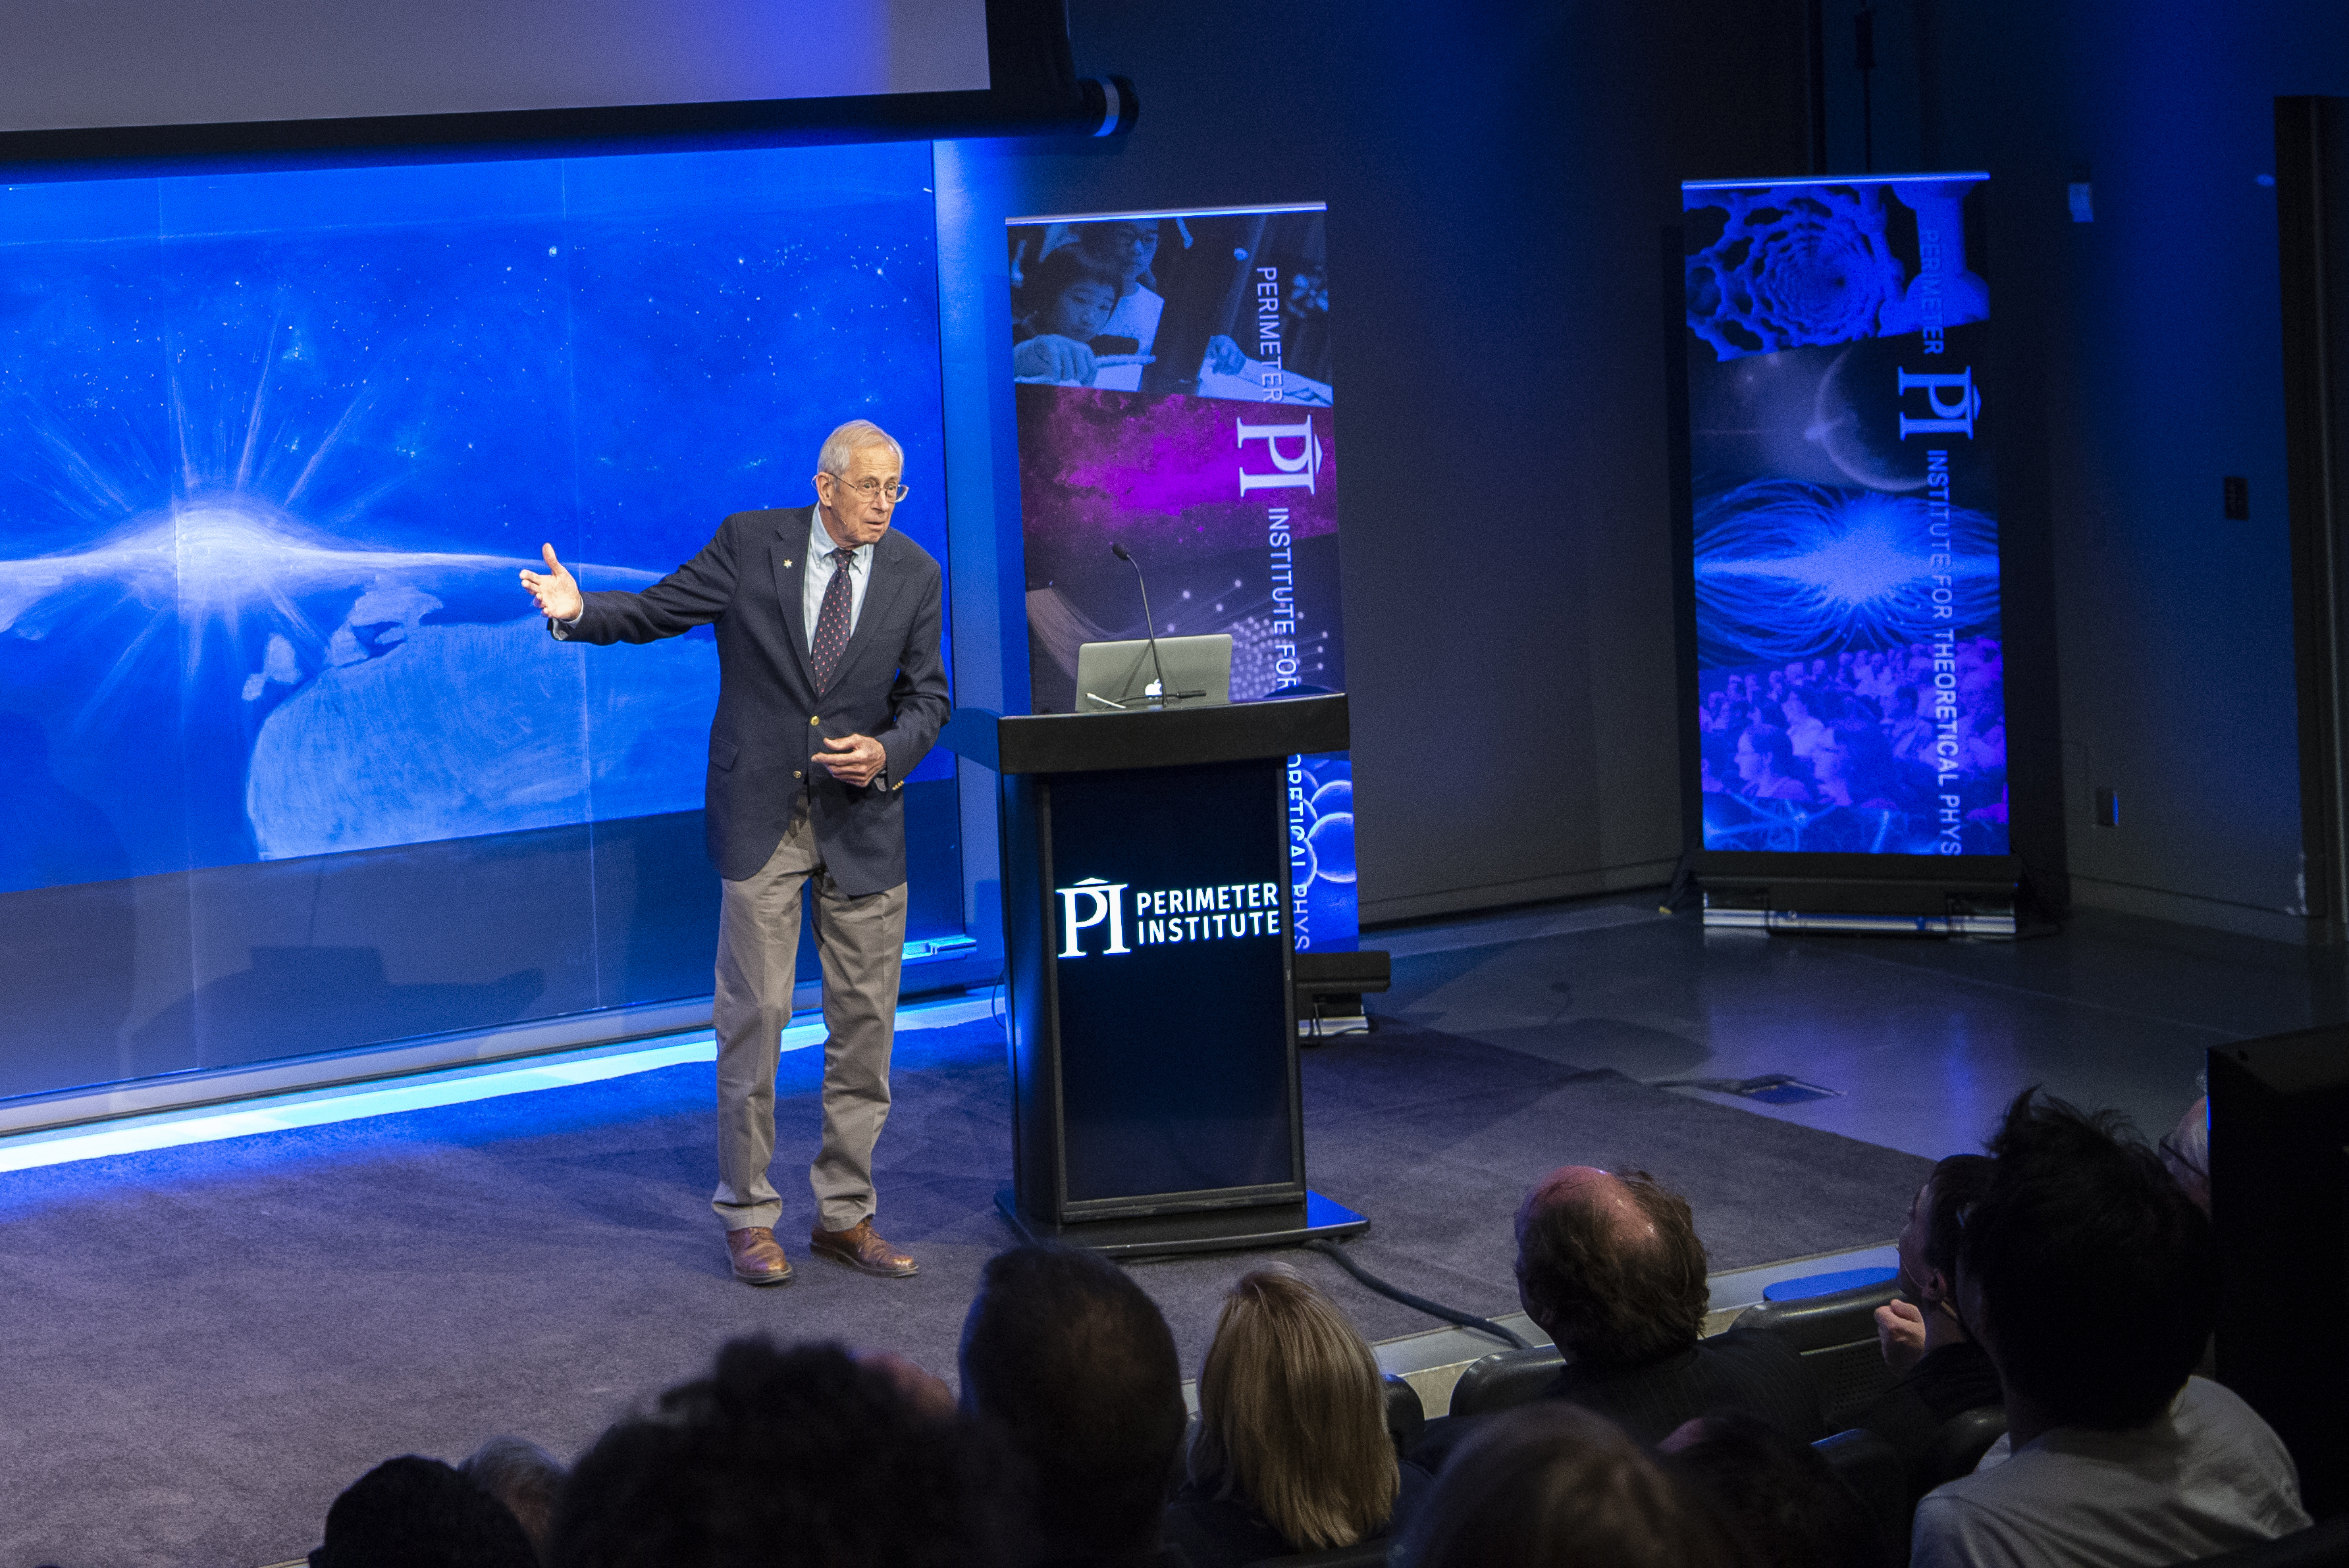 James Peebles, lauréat du prix Nobel 2019, s'exprimant pour le lancement du Center for the Universe à l'Institut Perimeter en 2017